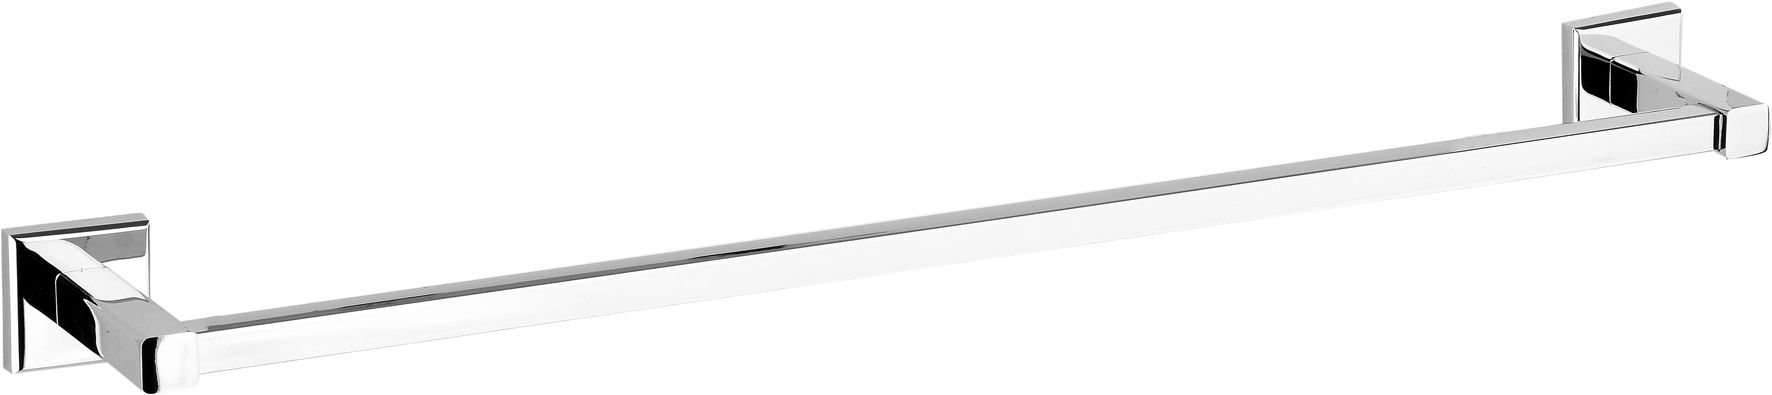 Aquaform designová vestavná svítidla Maxi Ring LED - DESIGNPROPAGANDA